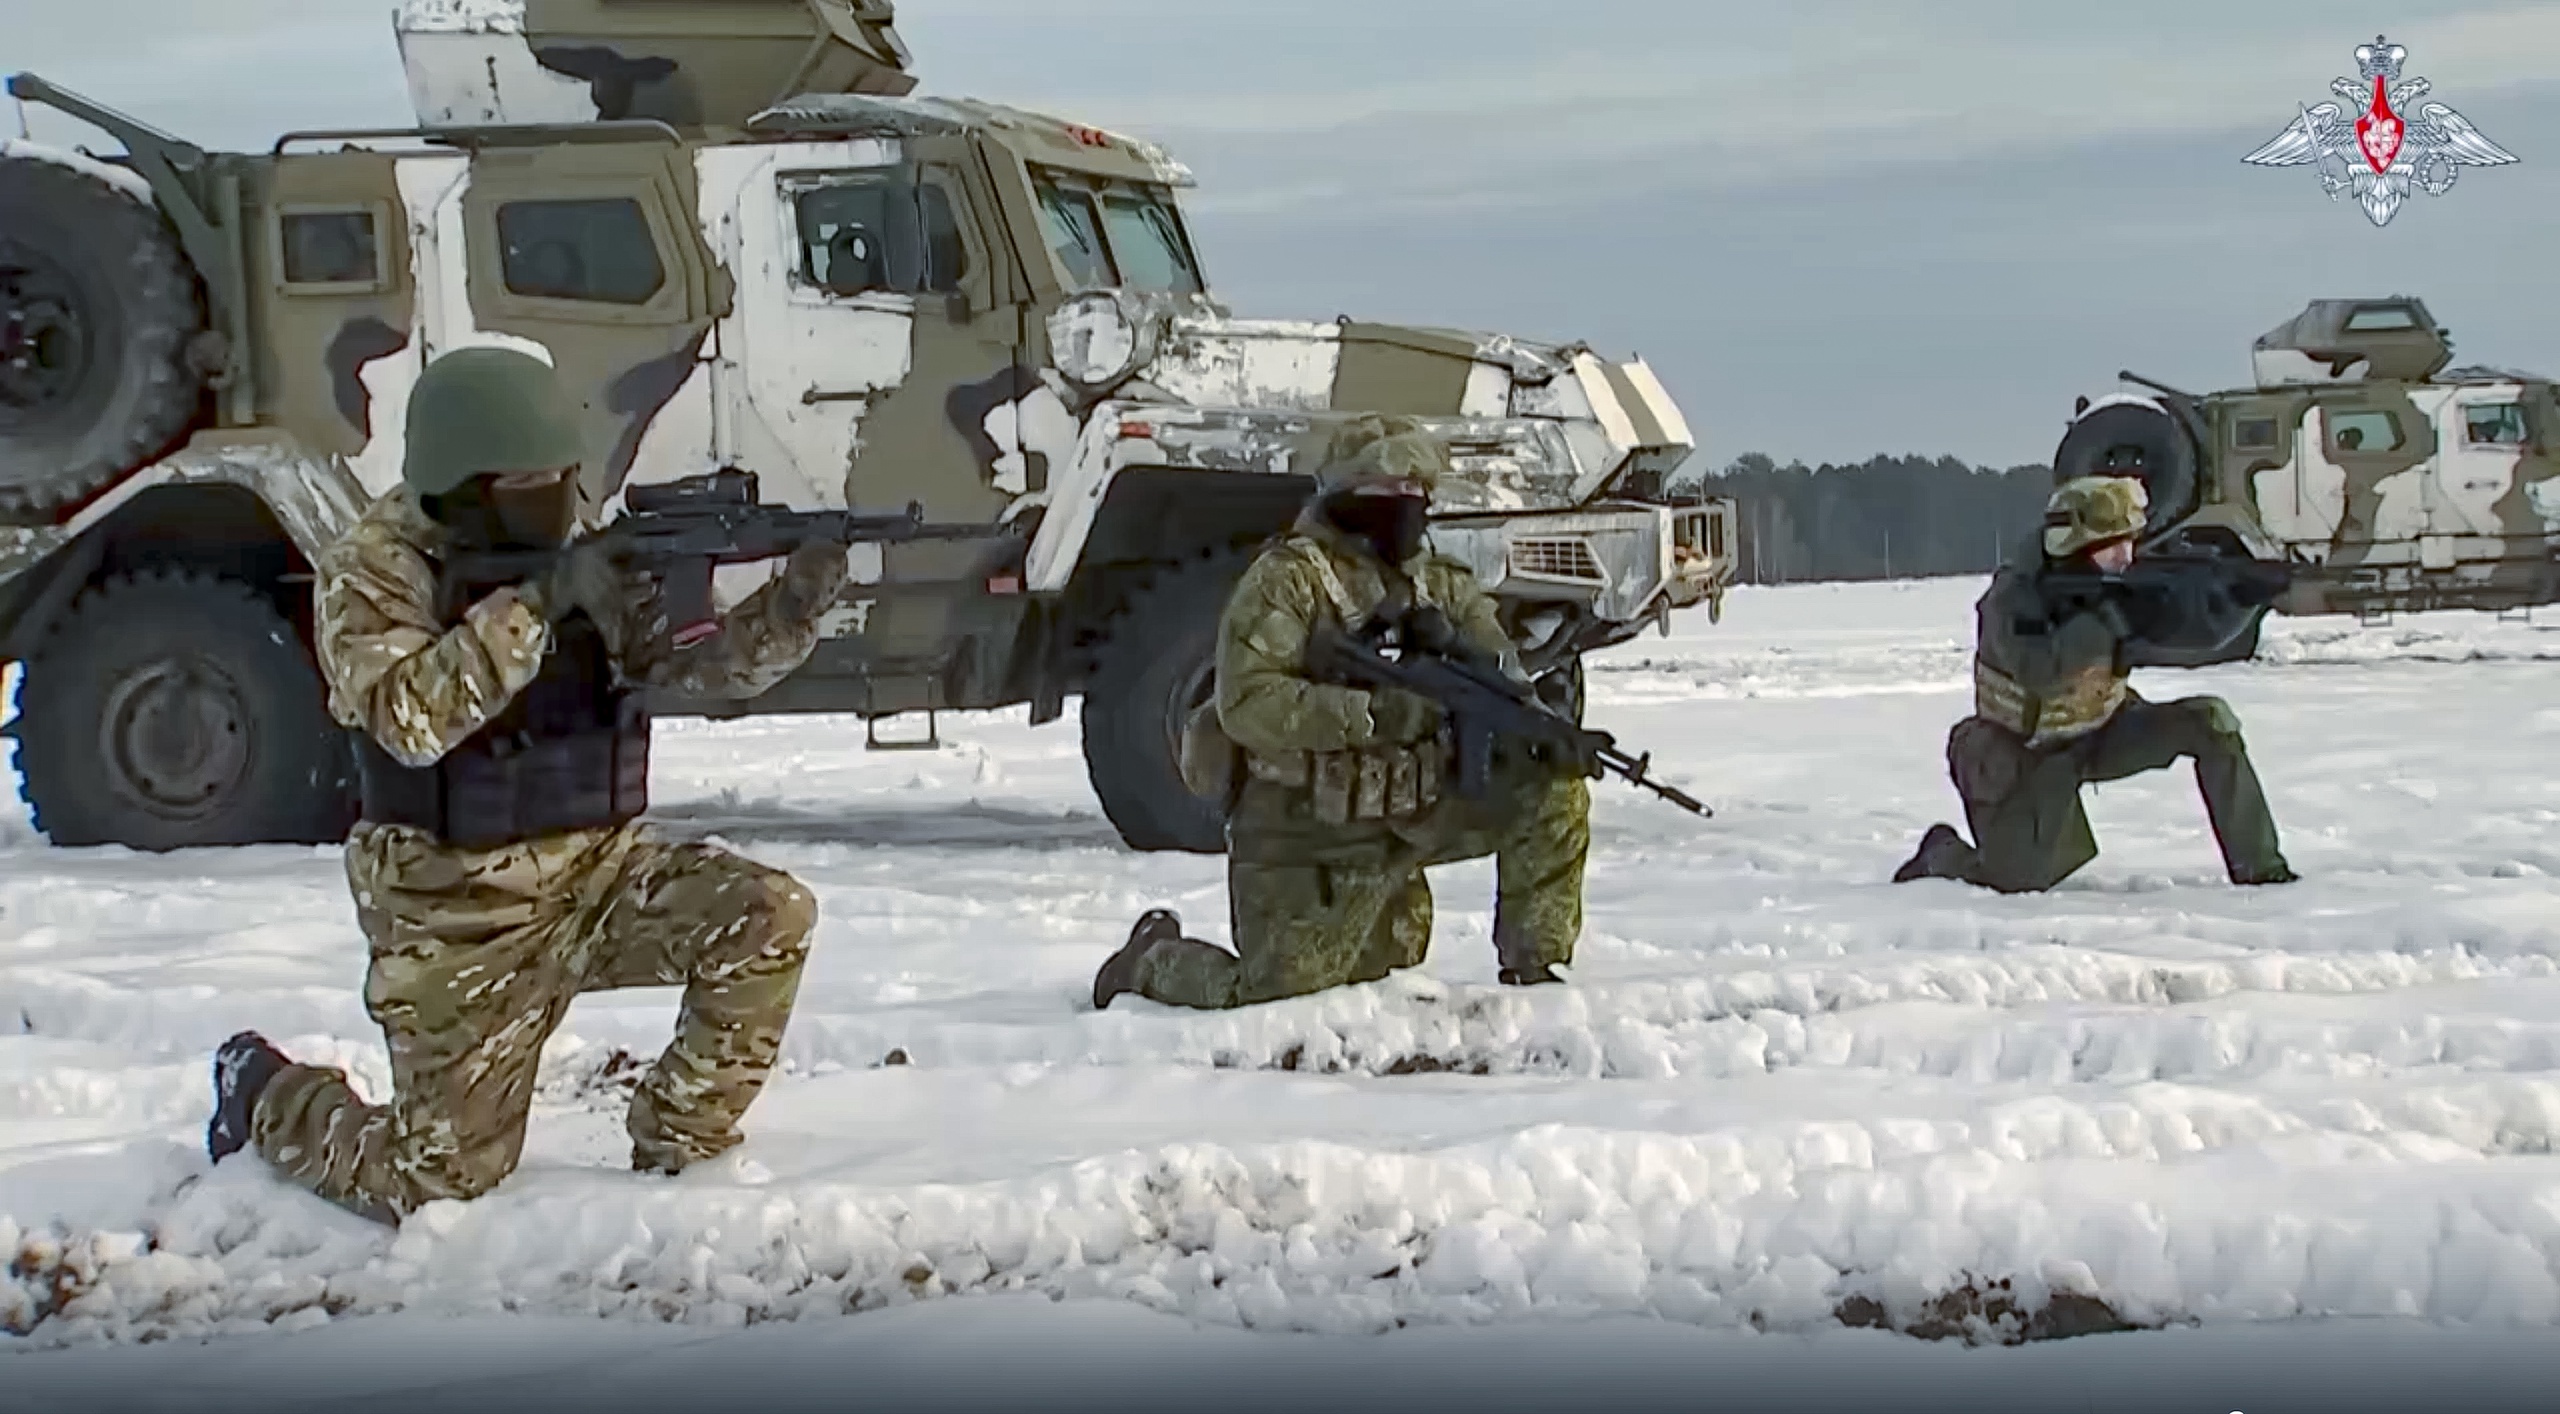 Rusland en Belarus gaan gezamenlijke militaire trainingen intensiveren, zo schrijft Reuters. De ervaring die Russische troepen hebben opgedaan in Oekraïne - met de nadruk op geürbaniseerde oorlogsvoering - wordt daarvoor als ijkpunt gebruikt, aldus Belarussische staatstelevisie.